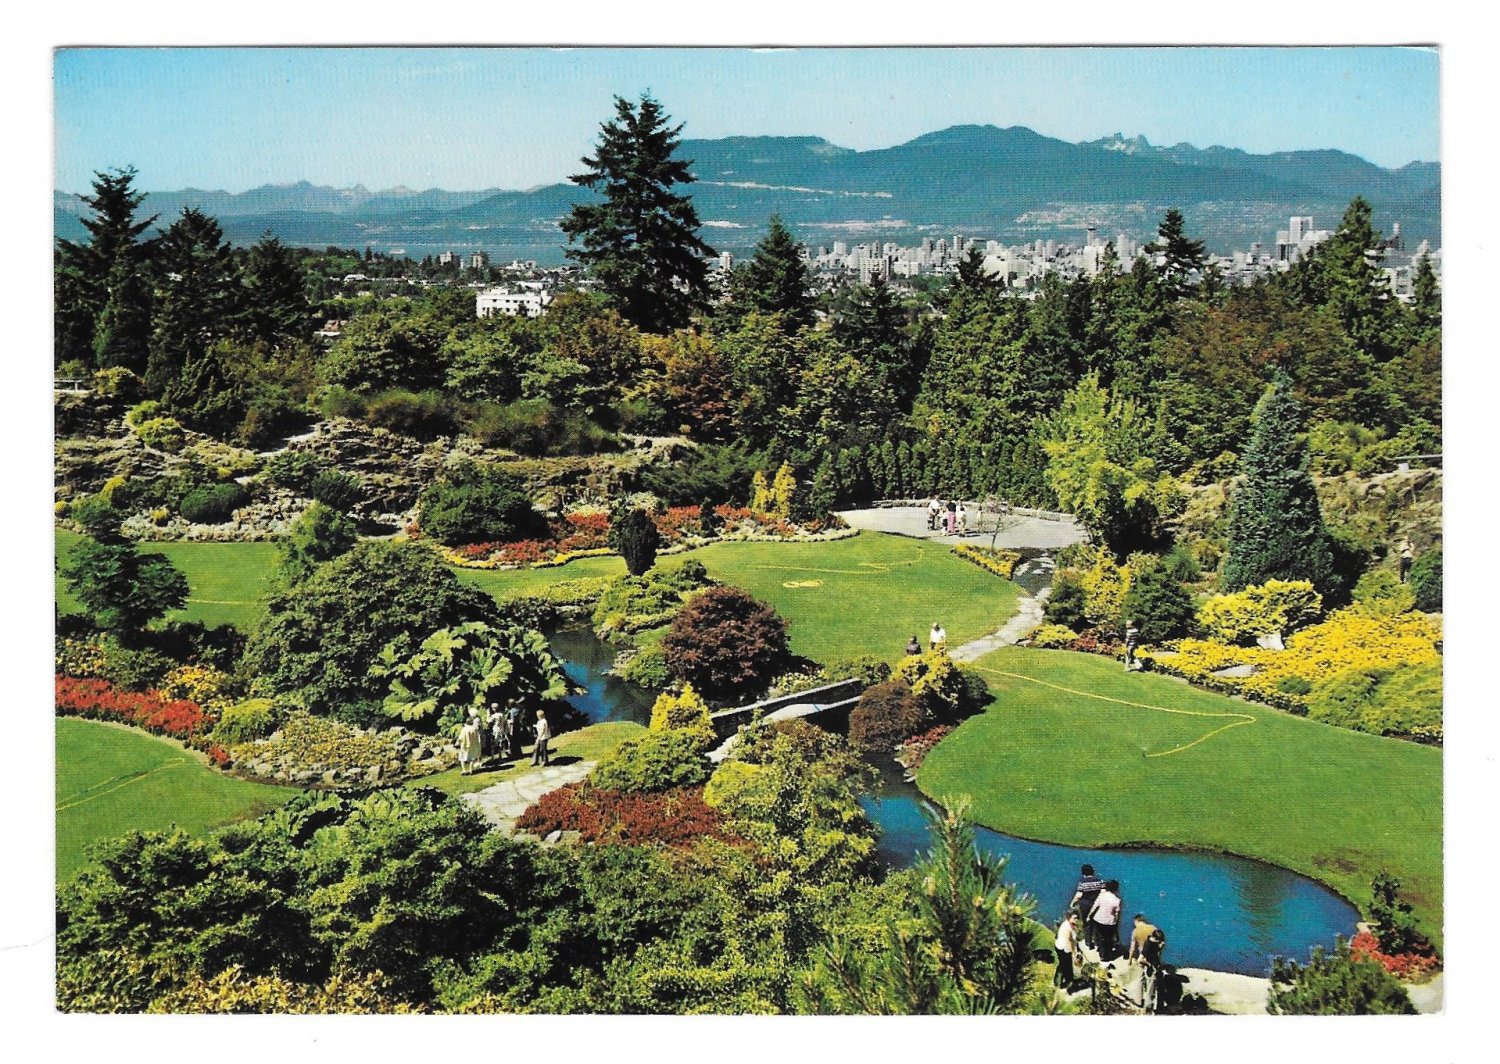 Vancouver Canada Queen Elizabeth Park Aerial View Ed Pryor Photo Vintage 4X6 Postcard